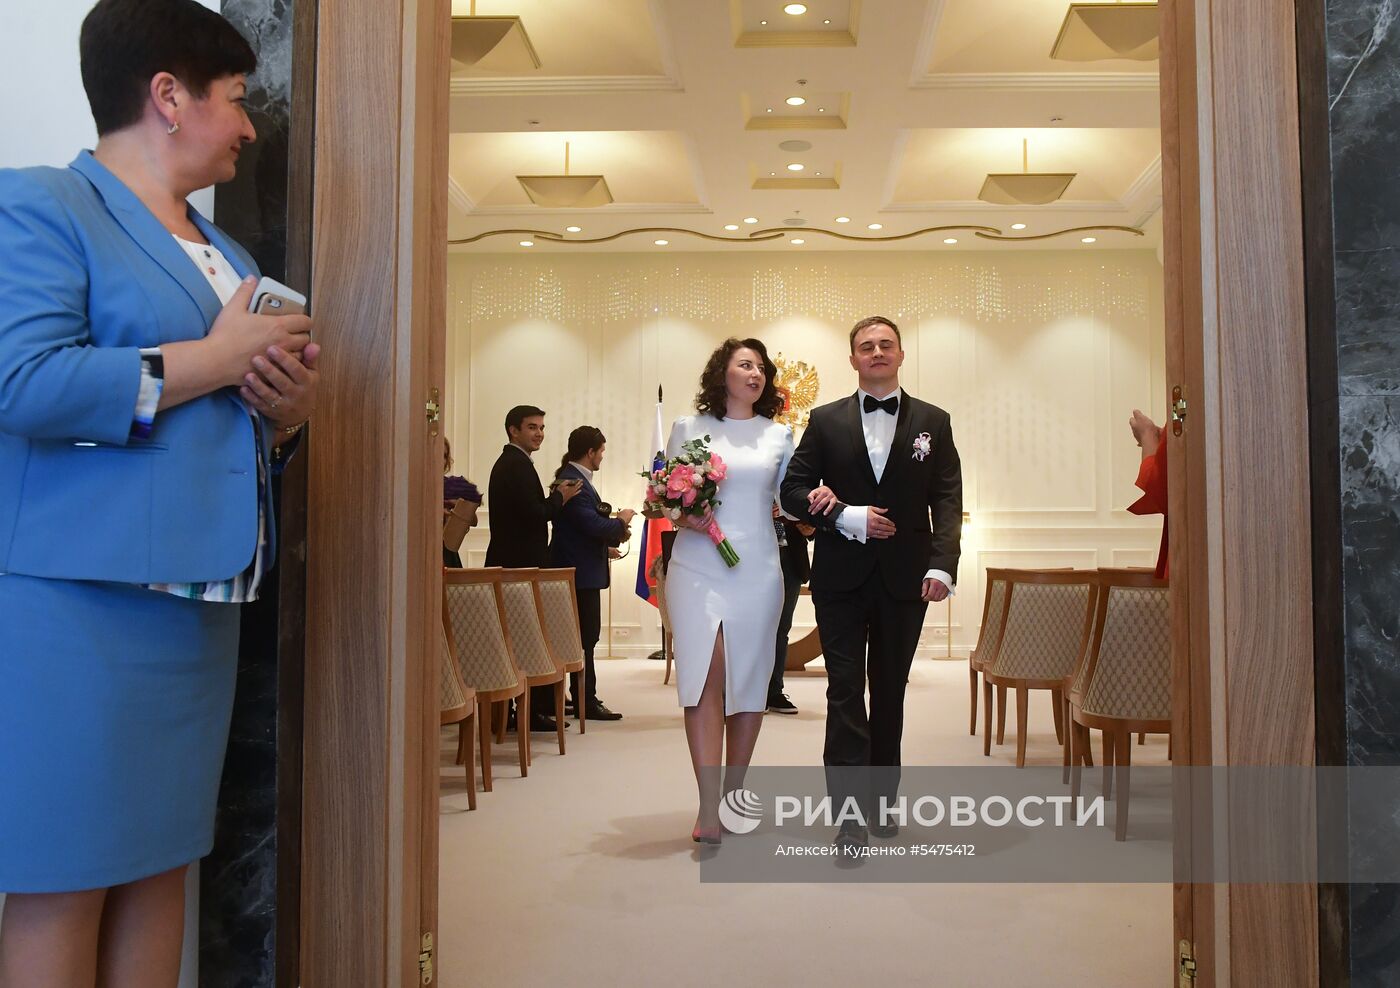 Открытие Московского областного дворца бракосочетания 